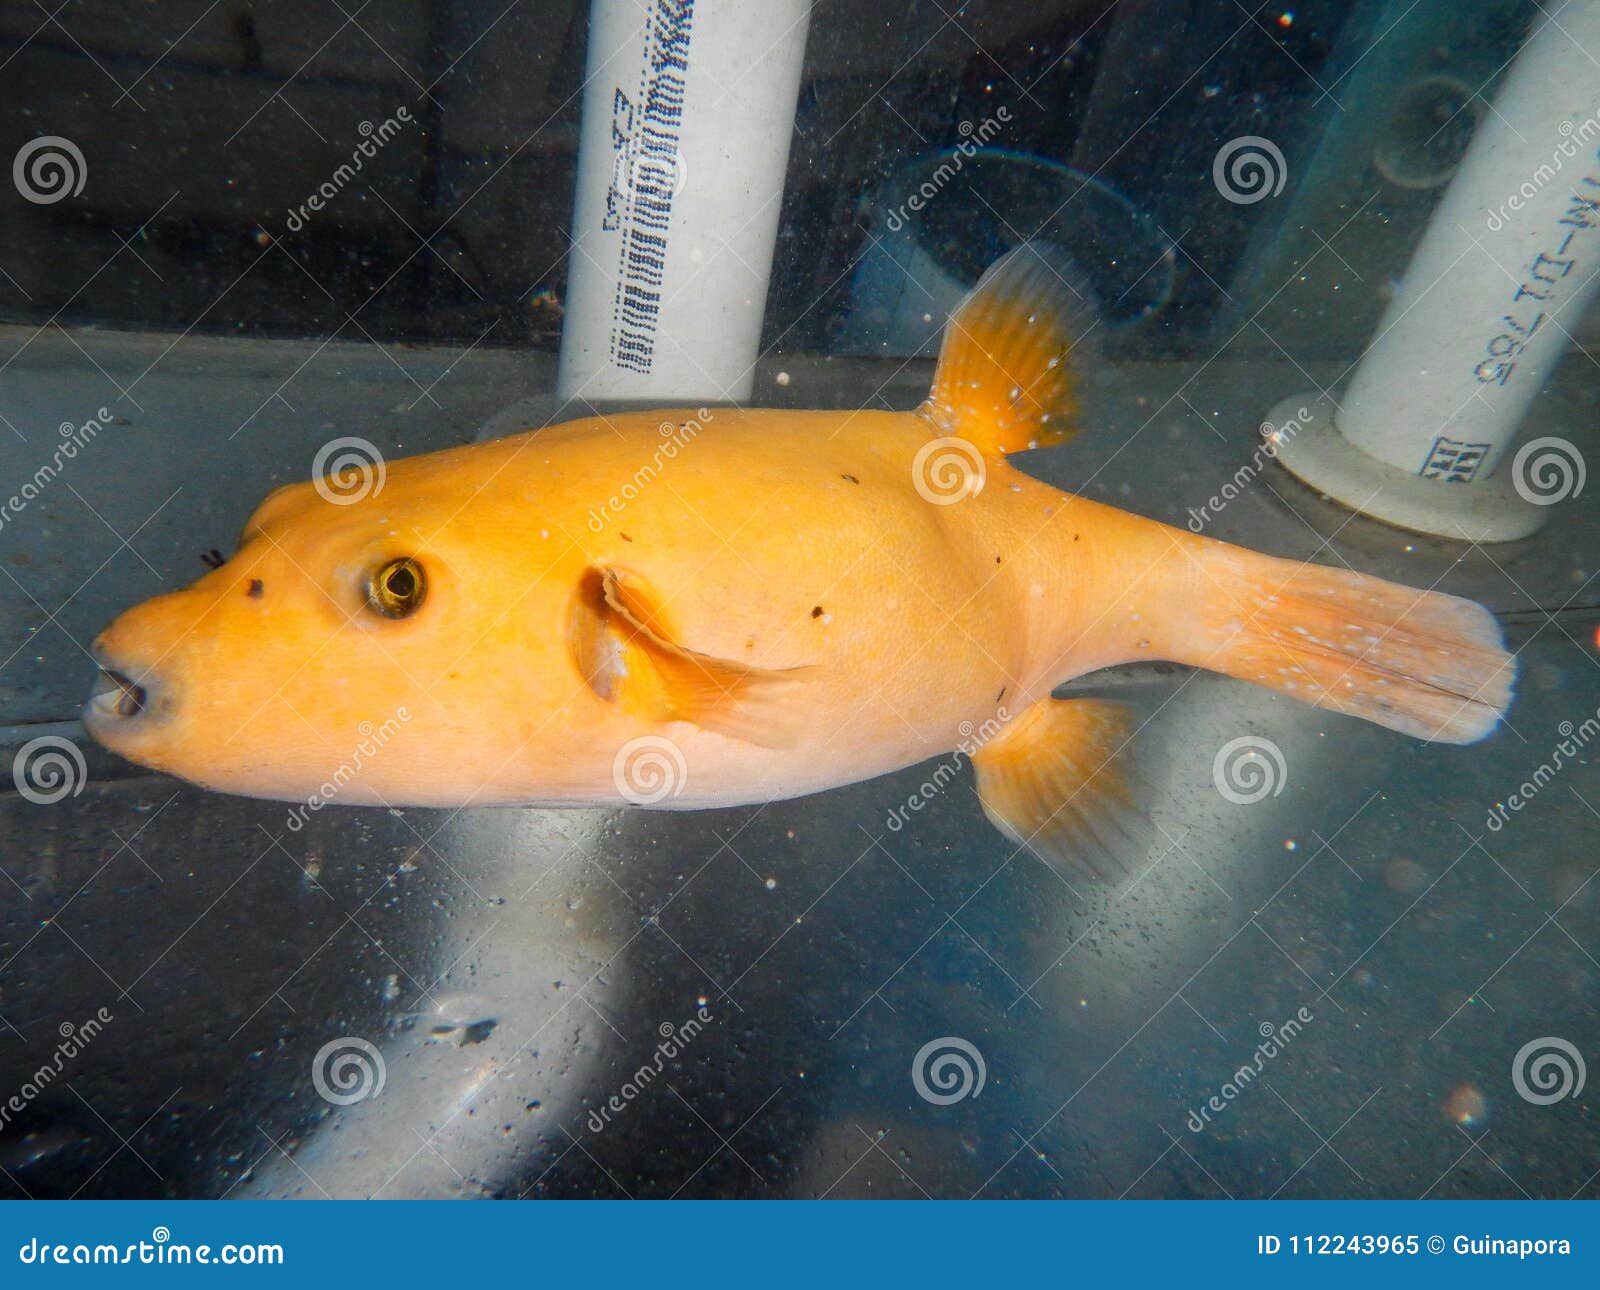 golden pufferfish